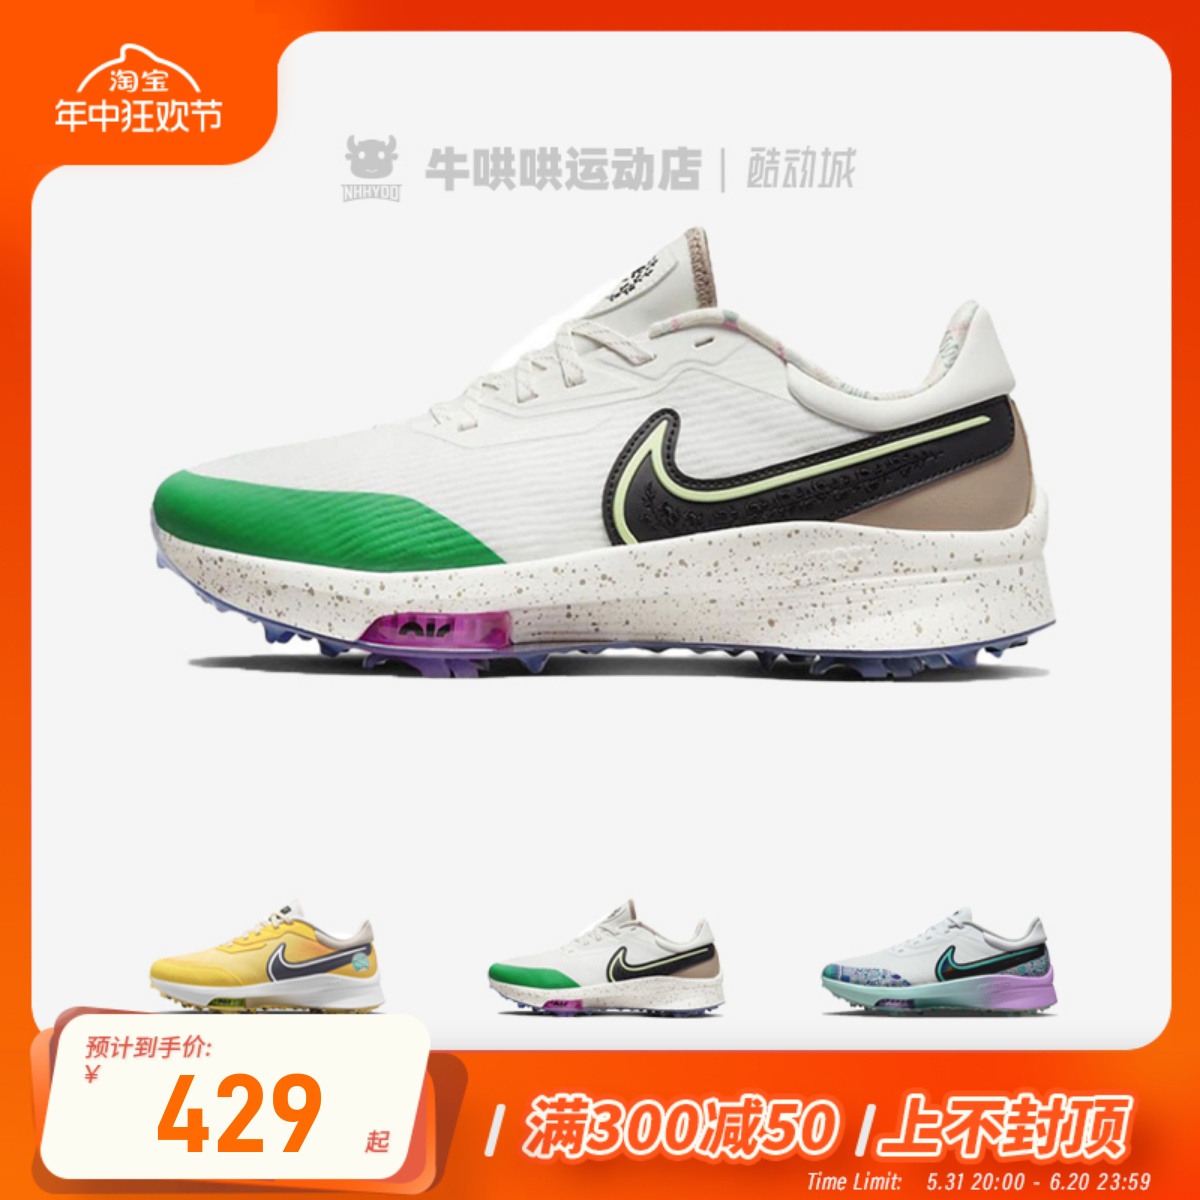 牛哄哄 Nike Air Zoom Infinity 米色 高尔夫球鞋 DQ4130-103 运动/瑜伽/健身/球迷用品 高尔夫鞋 原图主图